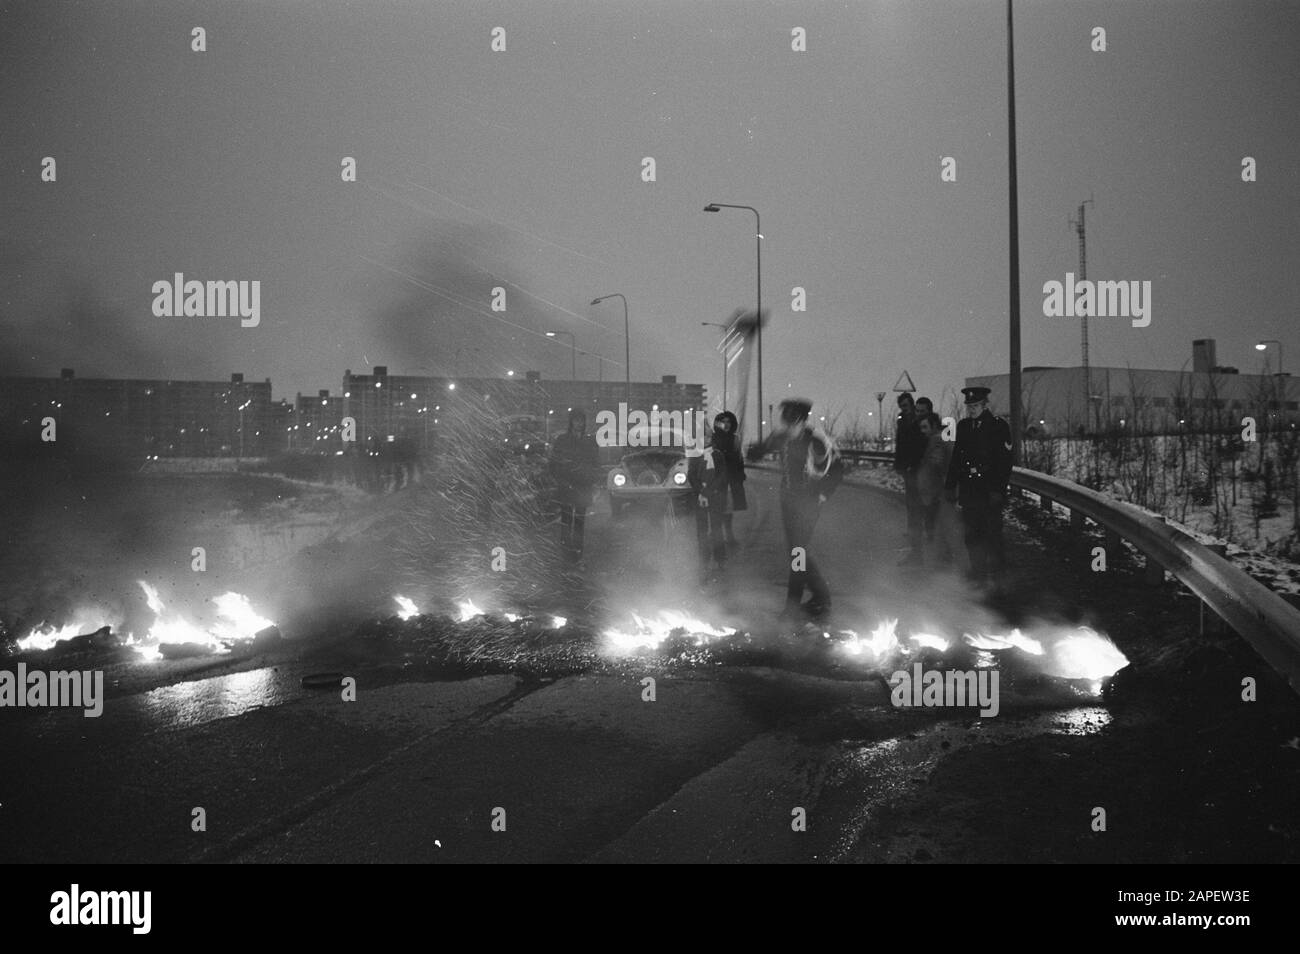 Bijlmerdwellers se trouve à un pâté de maisons de la manifestation contre la location de garage avec des pneus en feu Date: 1 février 1972 mots clés: Protestations Banque D'Images